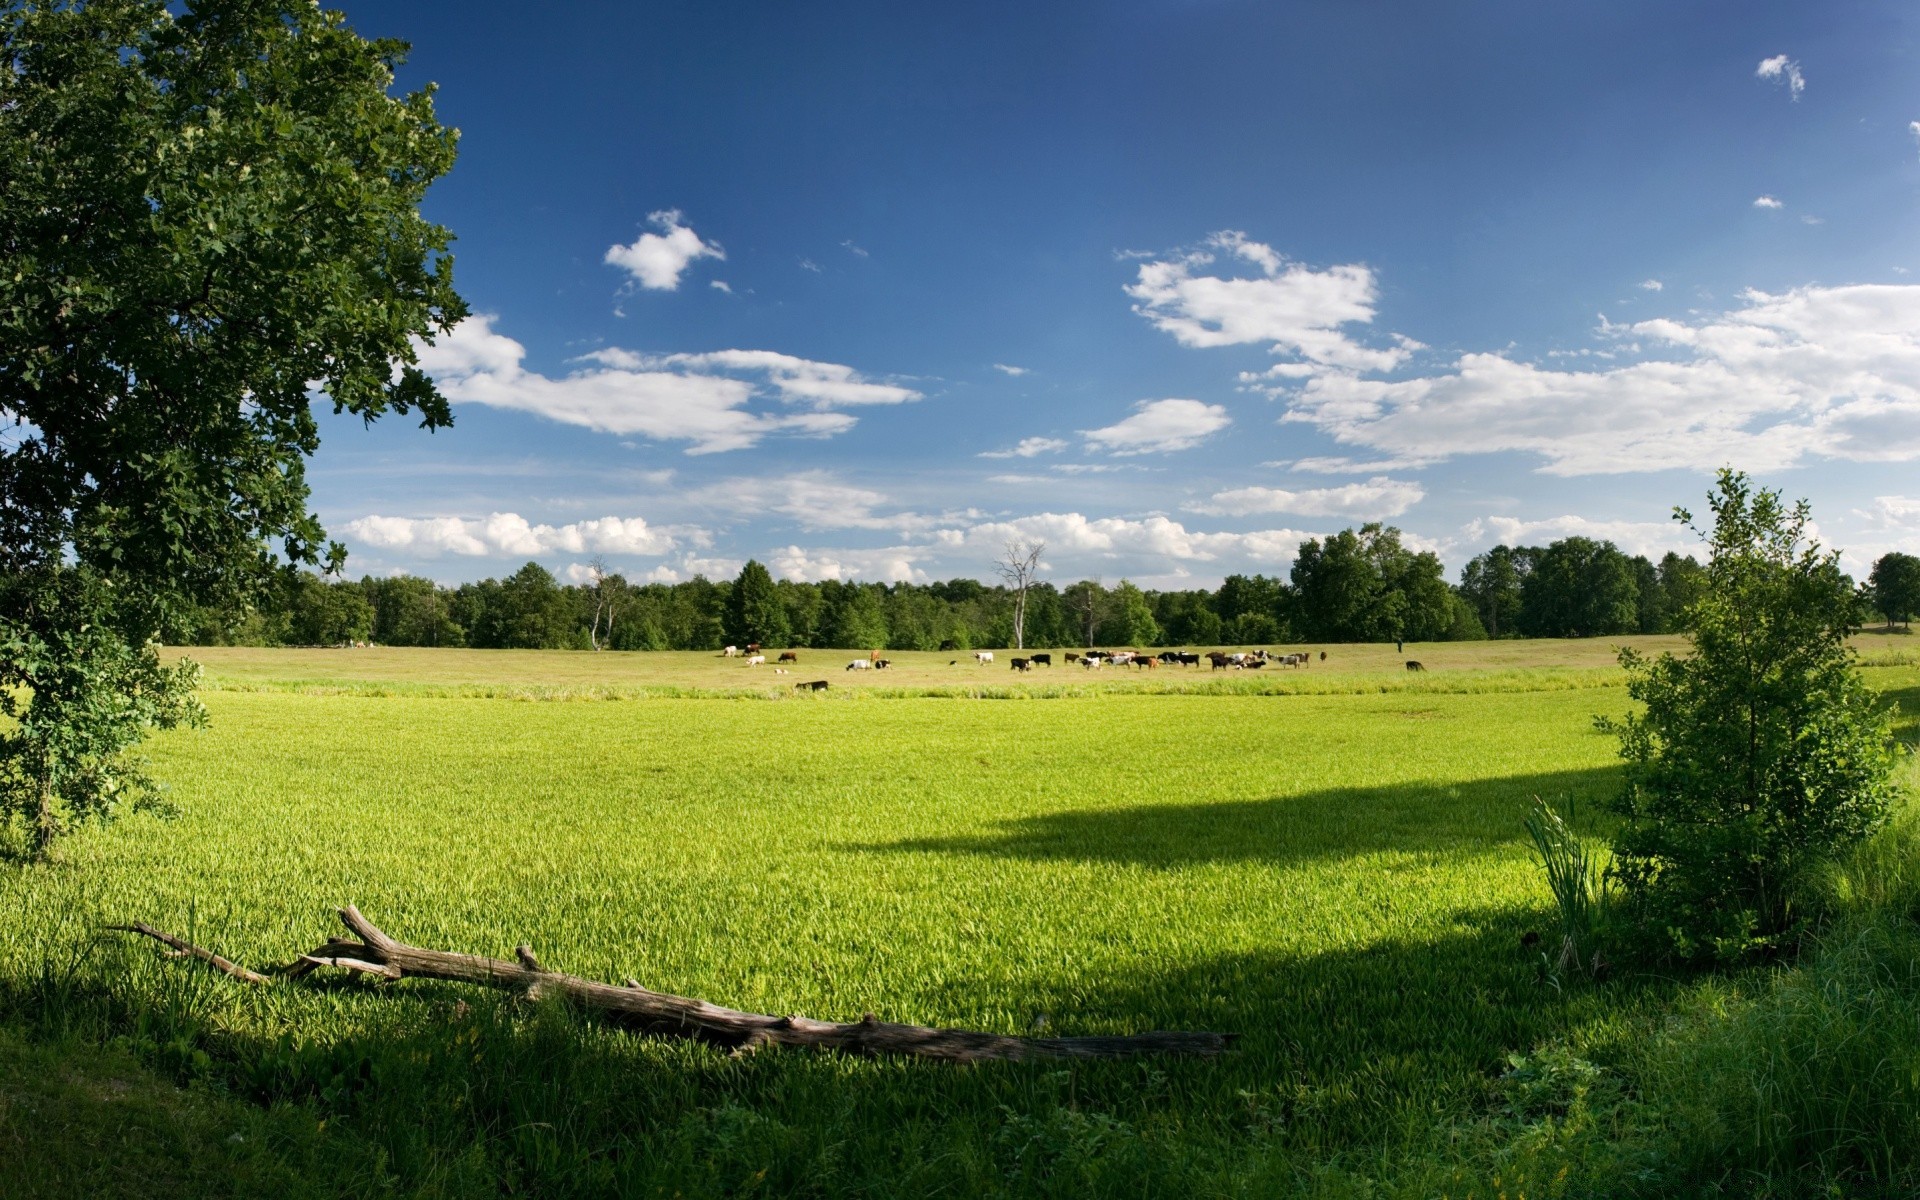 пейзажи трава пейзаж сельских сельское хозяйство природа сенокос на открытом воздухе сельской местности дерево поле лето пастбище небо ферма идиллия почвы древесины